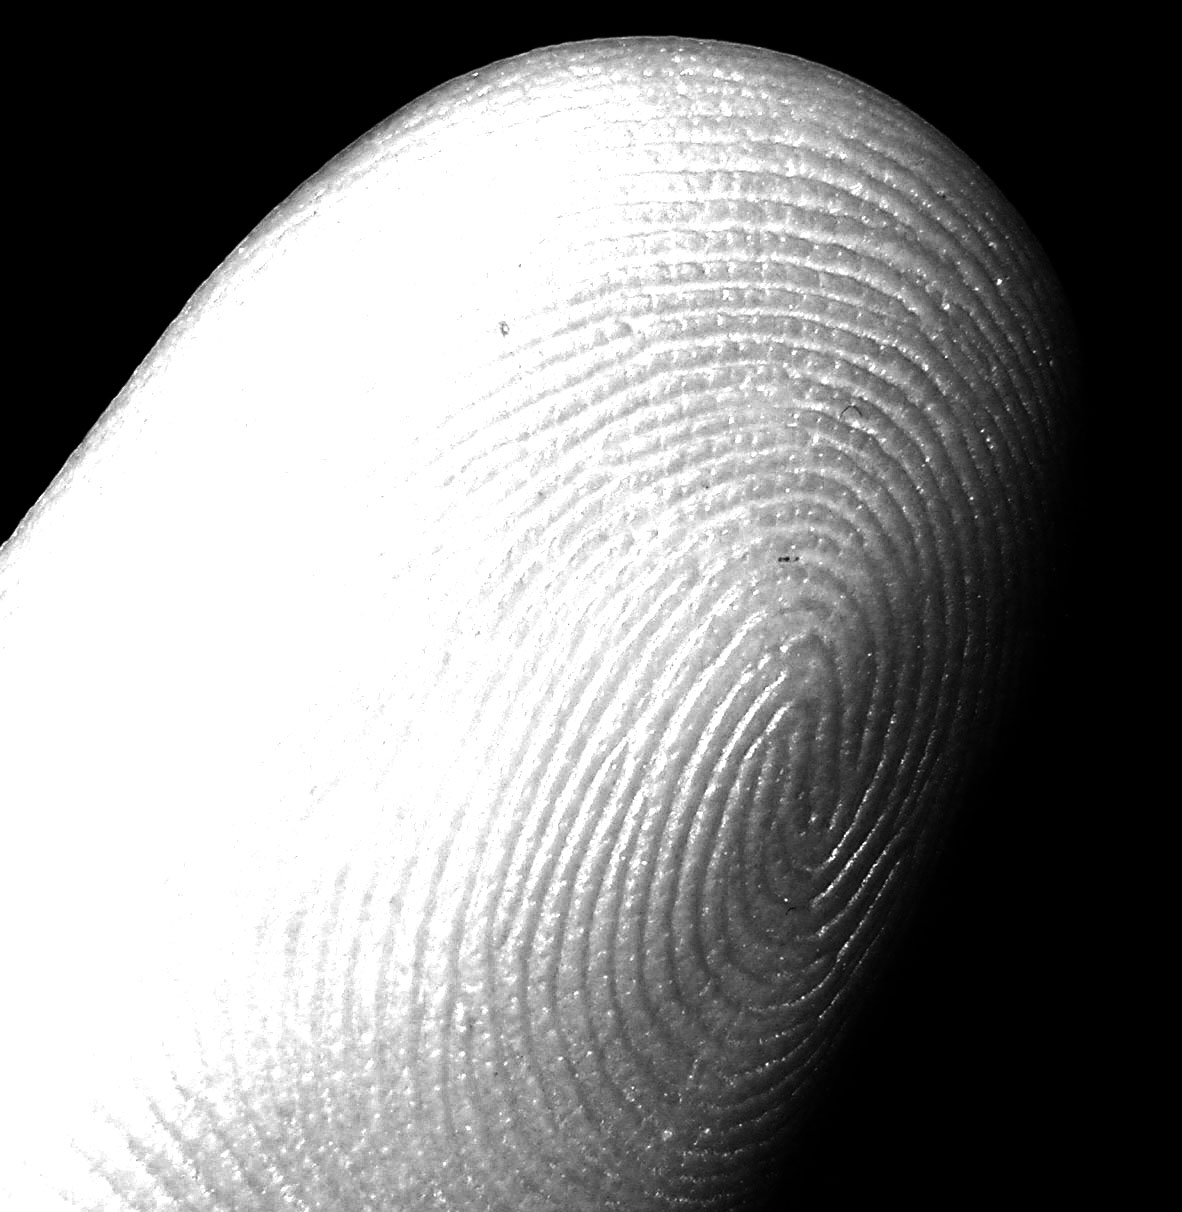 fingerprint-impronte-digitali